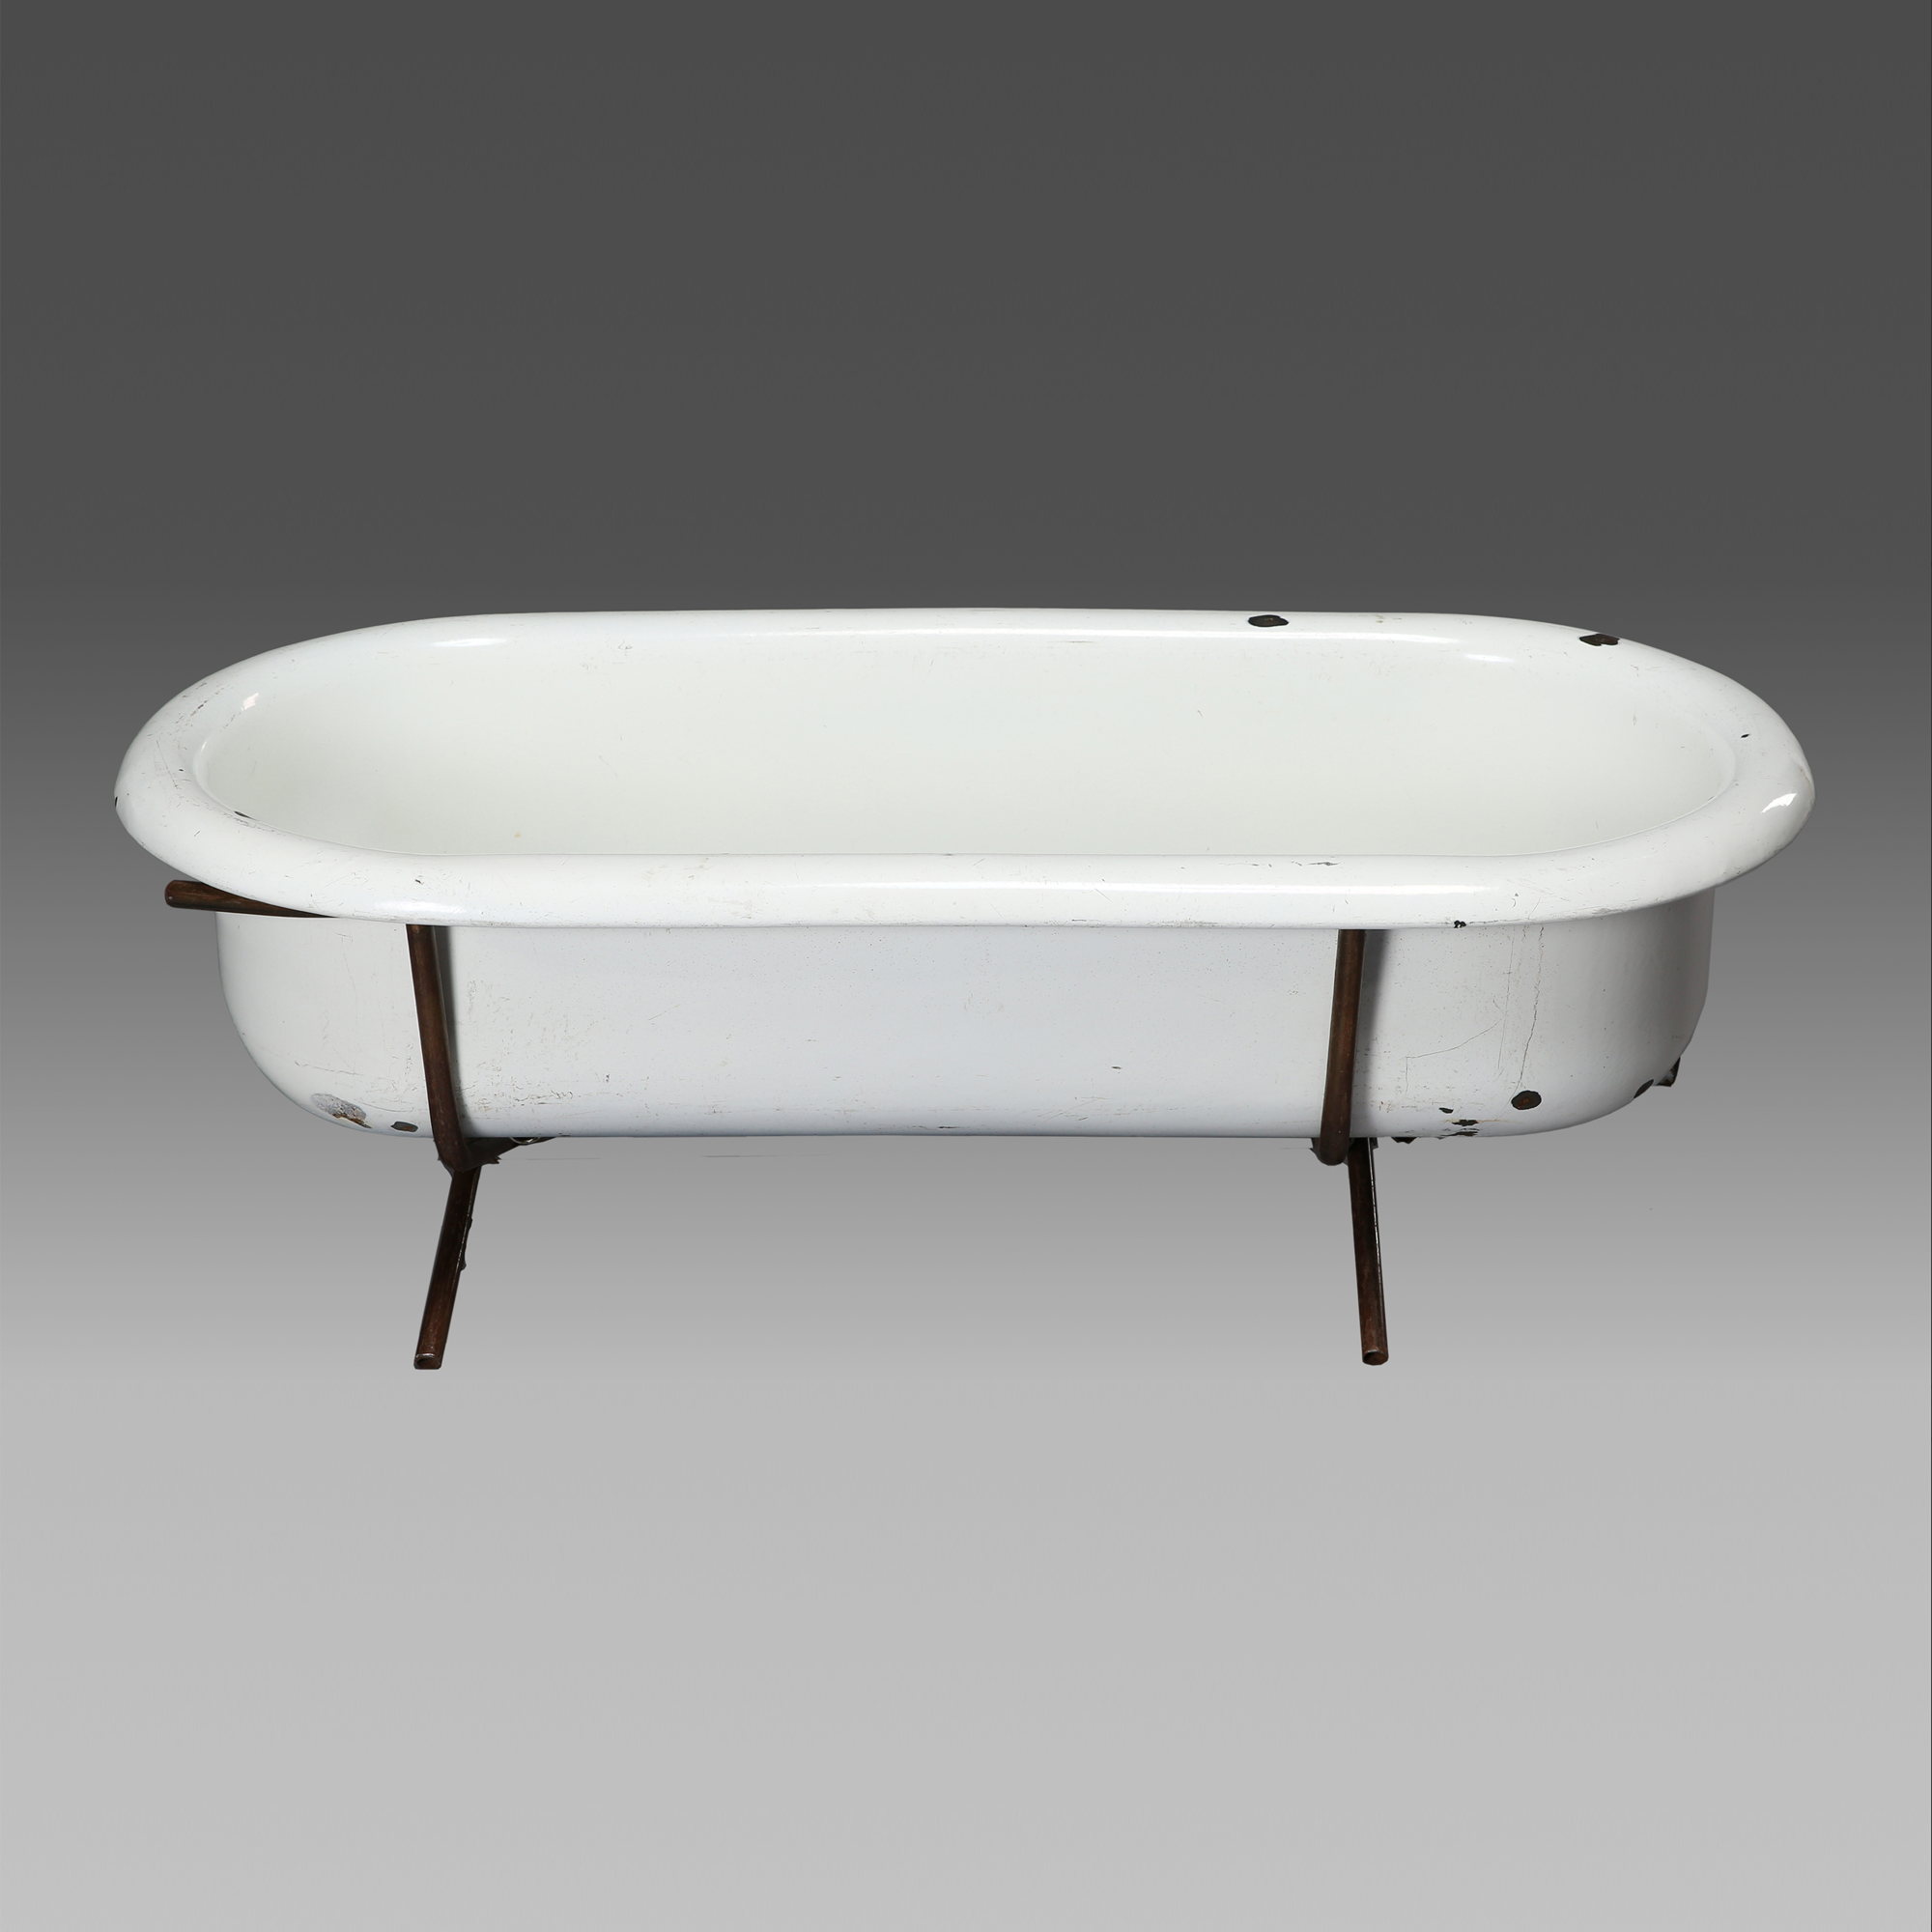 Bath Table - White